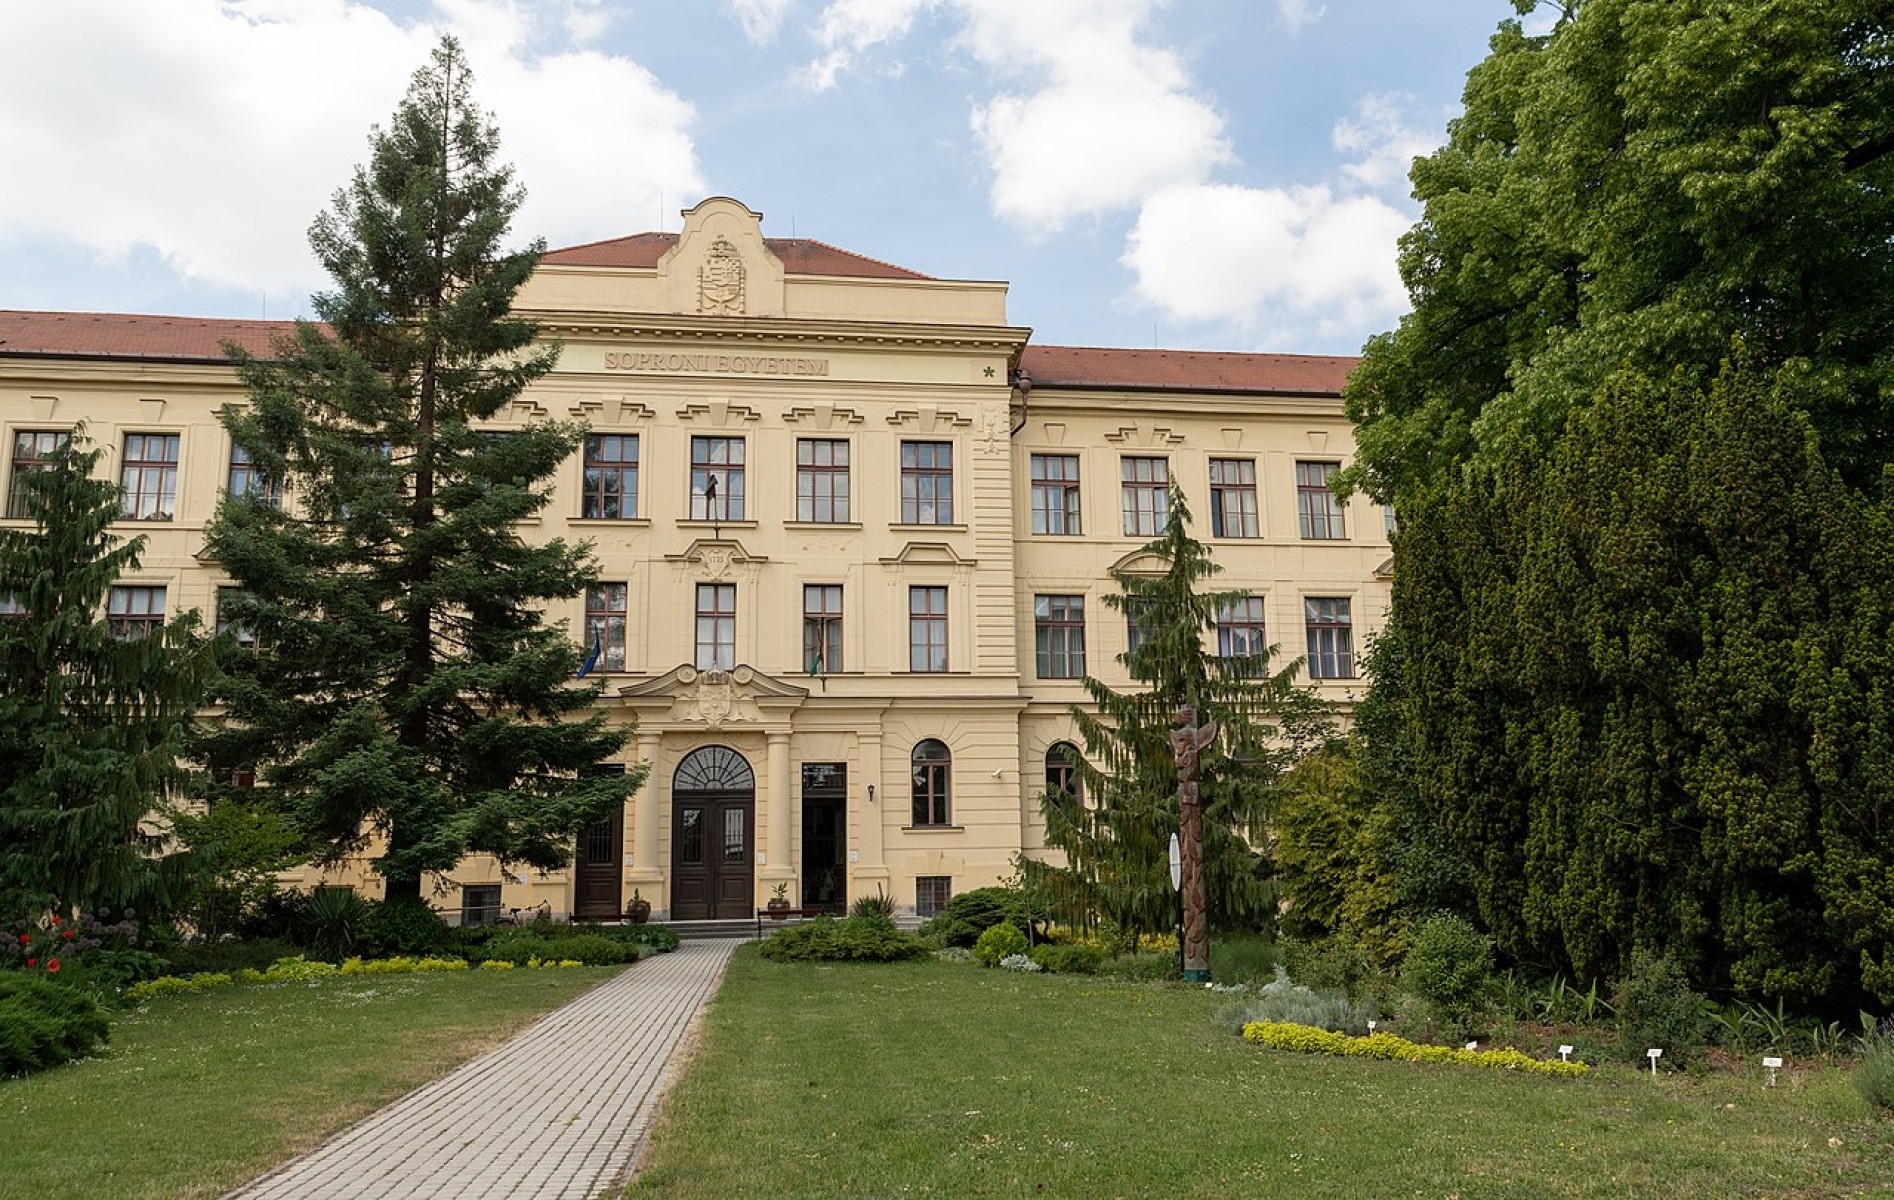 A Soproni Egyetem is alapító tag lett a Természetpozitív Egyetemek Szövetségében